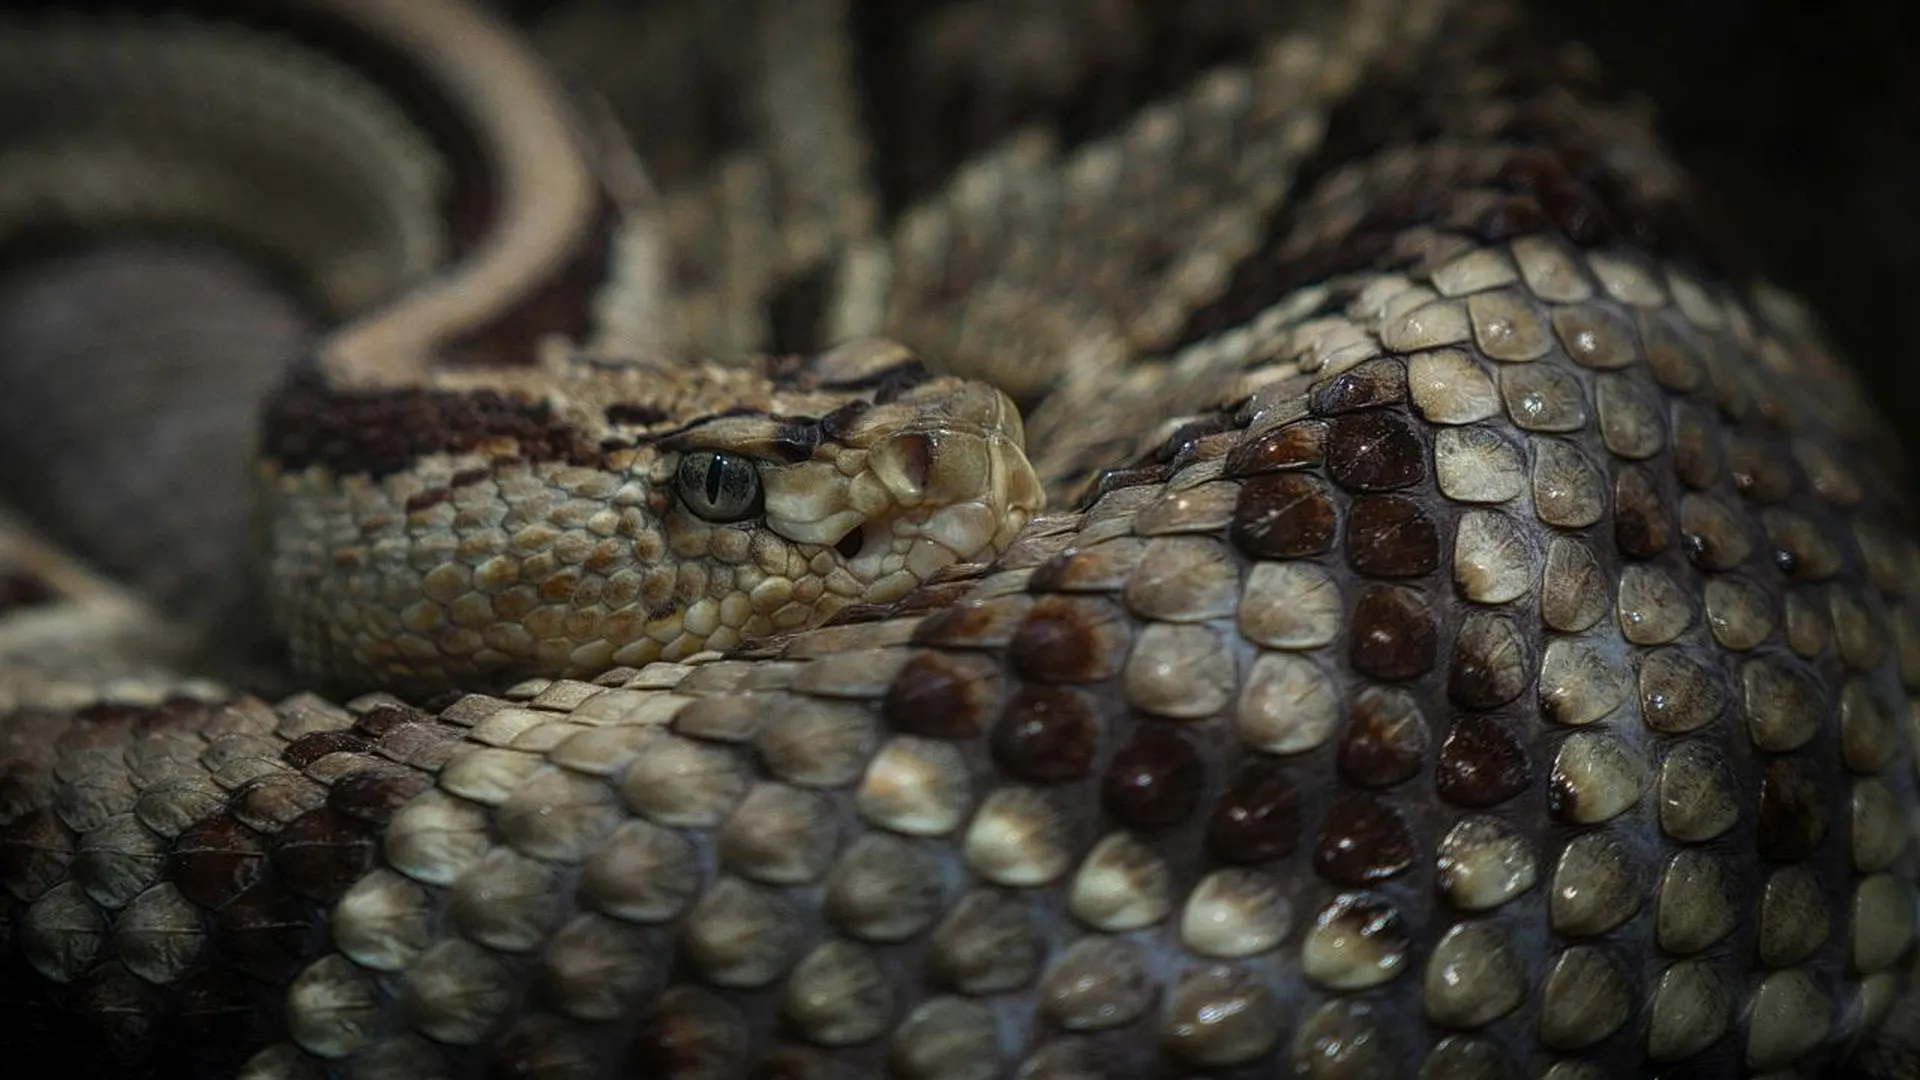 Жителей Подмосковья предупредили об опасности столкновения с ядовитыми змеями